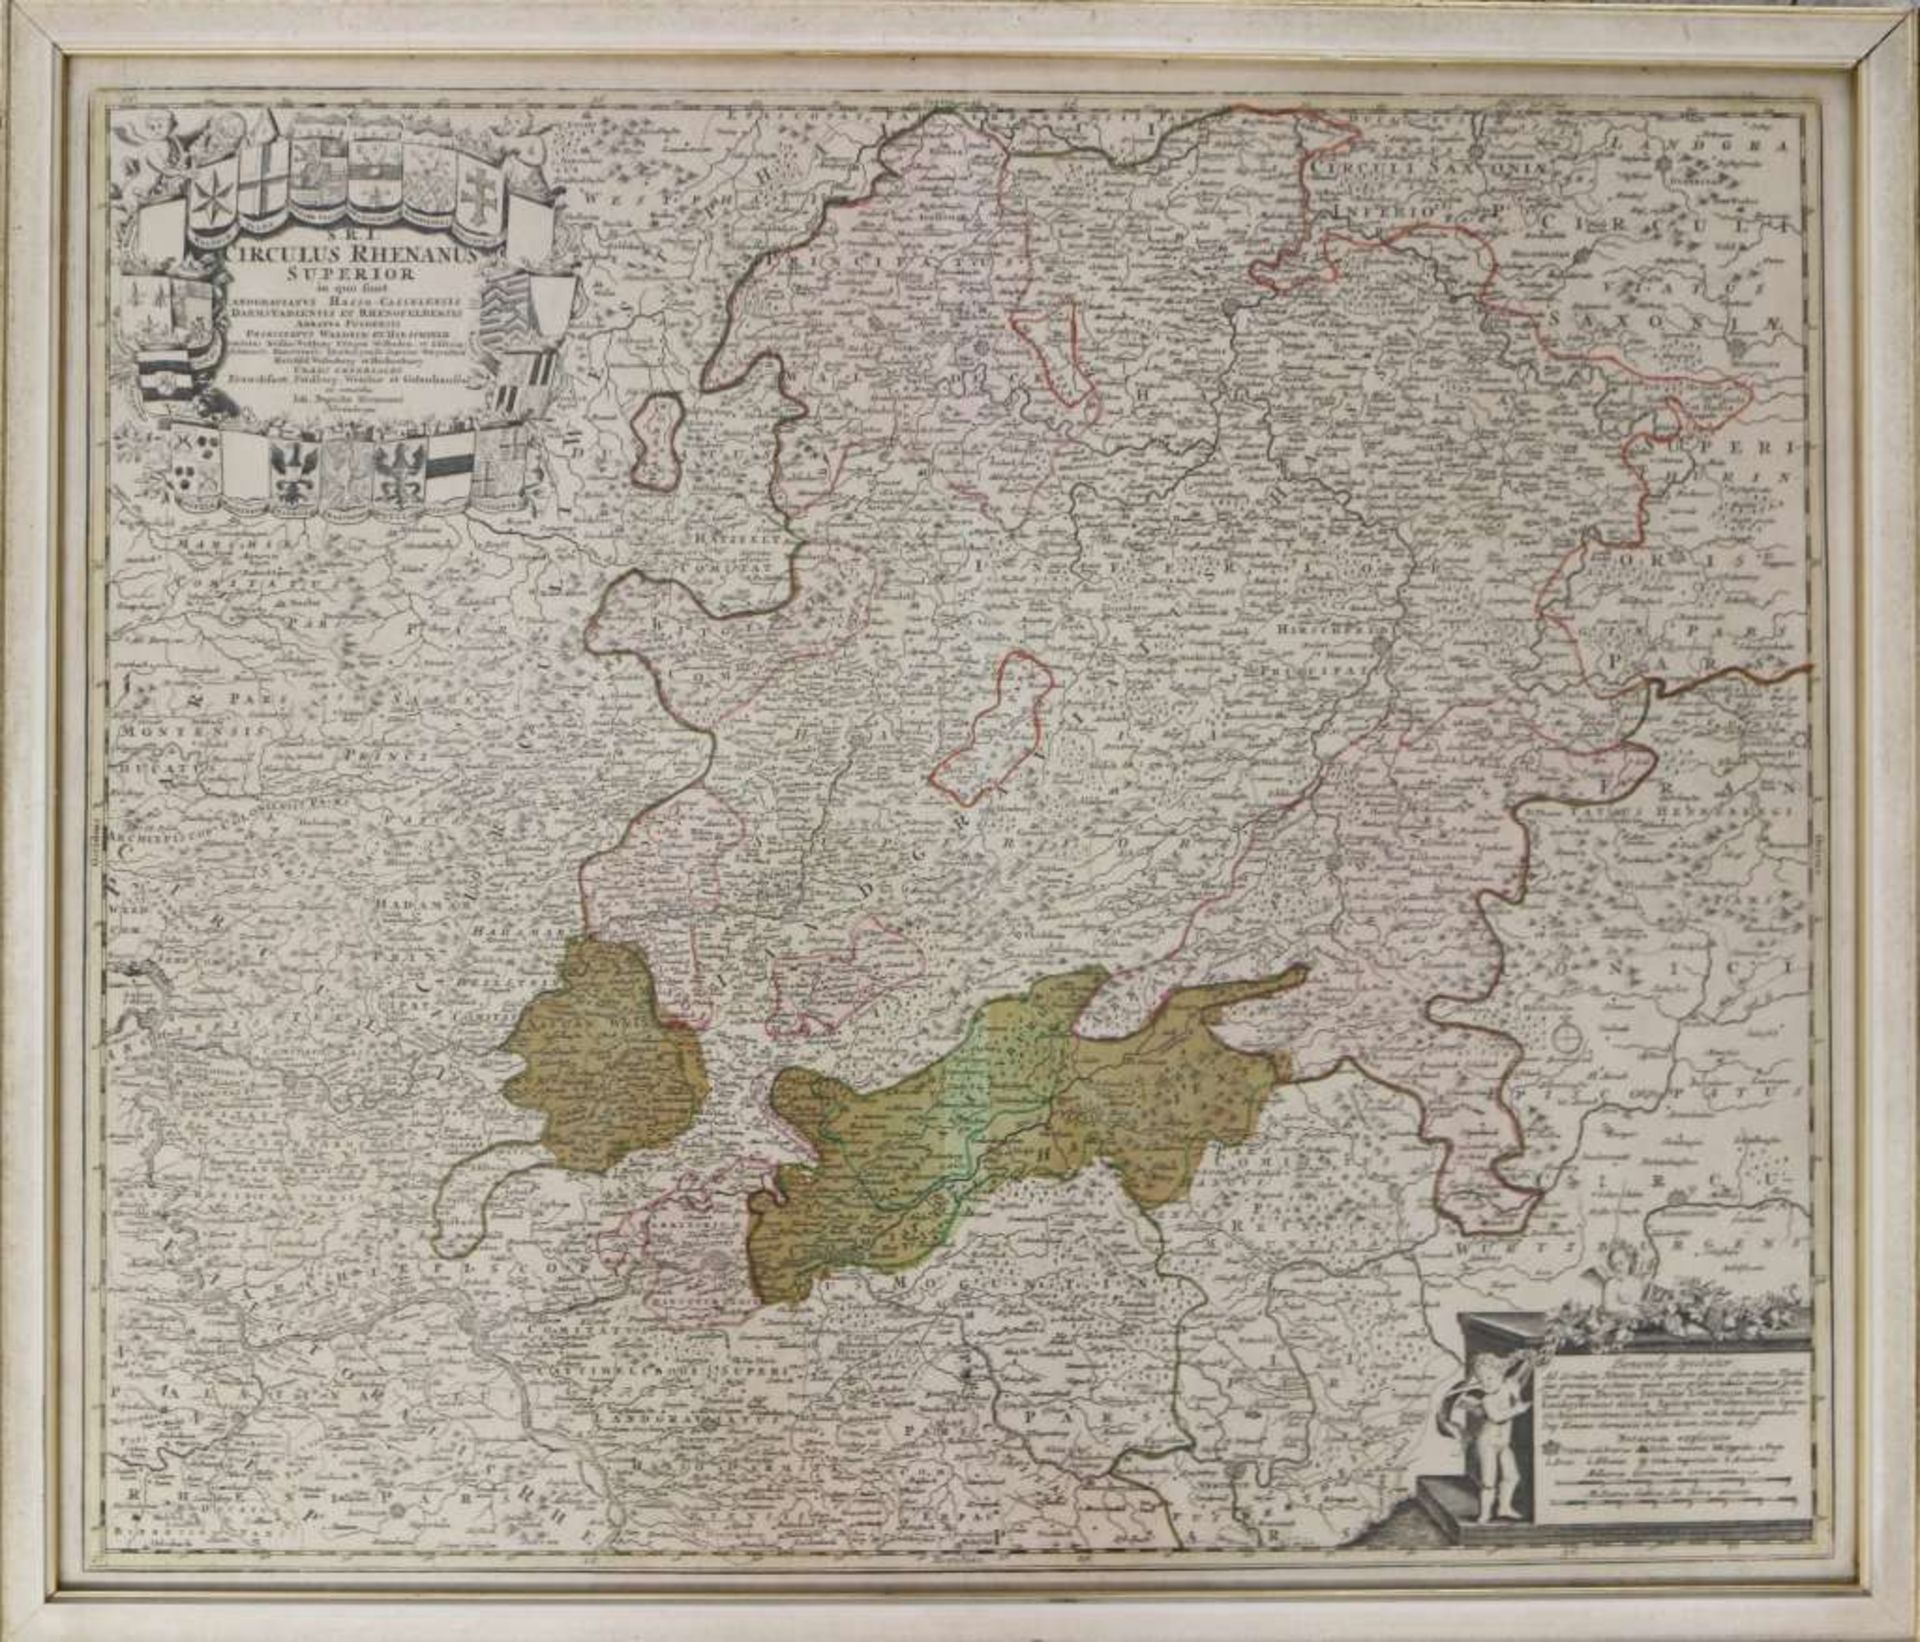 Johann Baptist Homann (1664 - 1724), Landkarte von Hessen und des Mittelrheingebietes, "S.R.I.